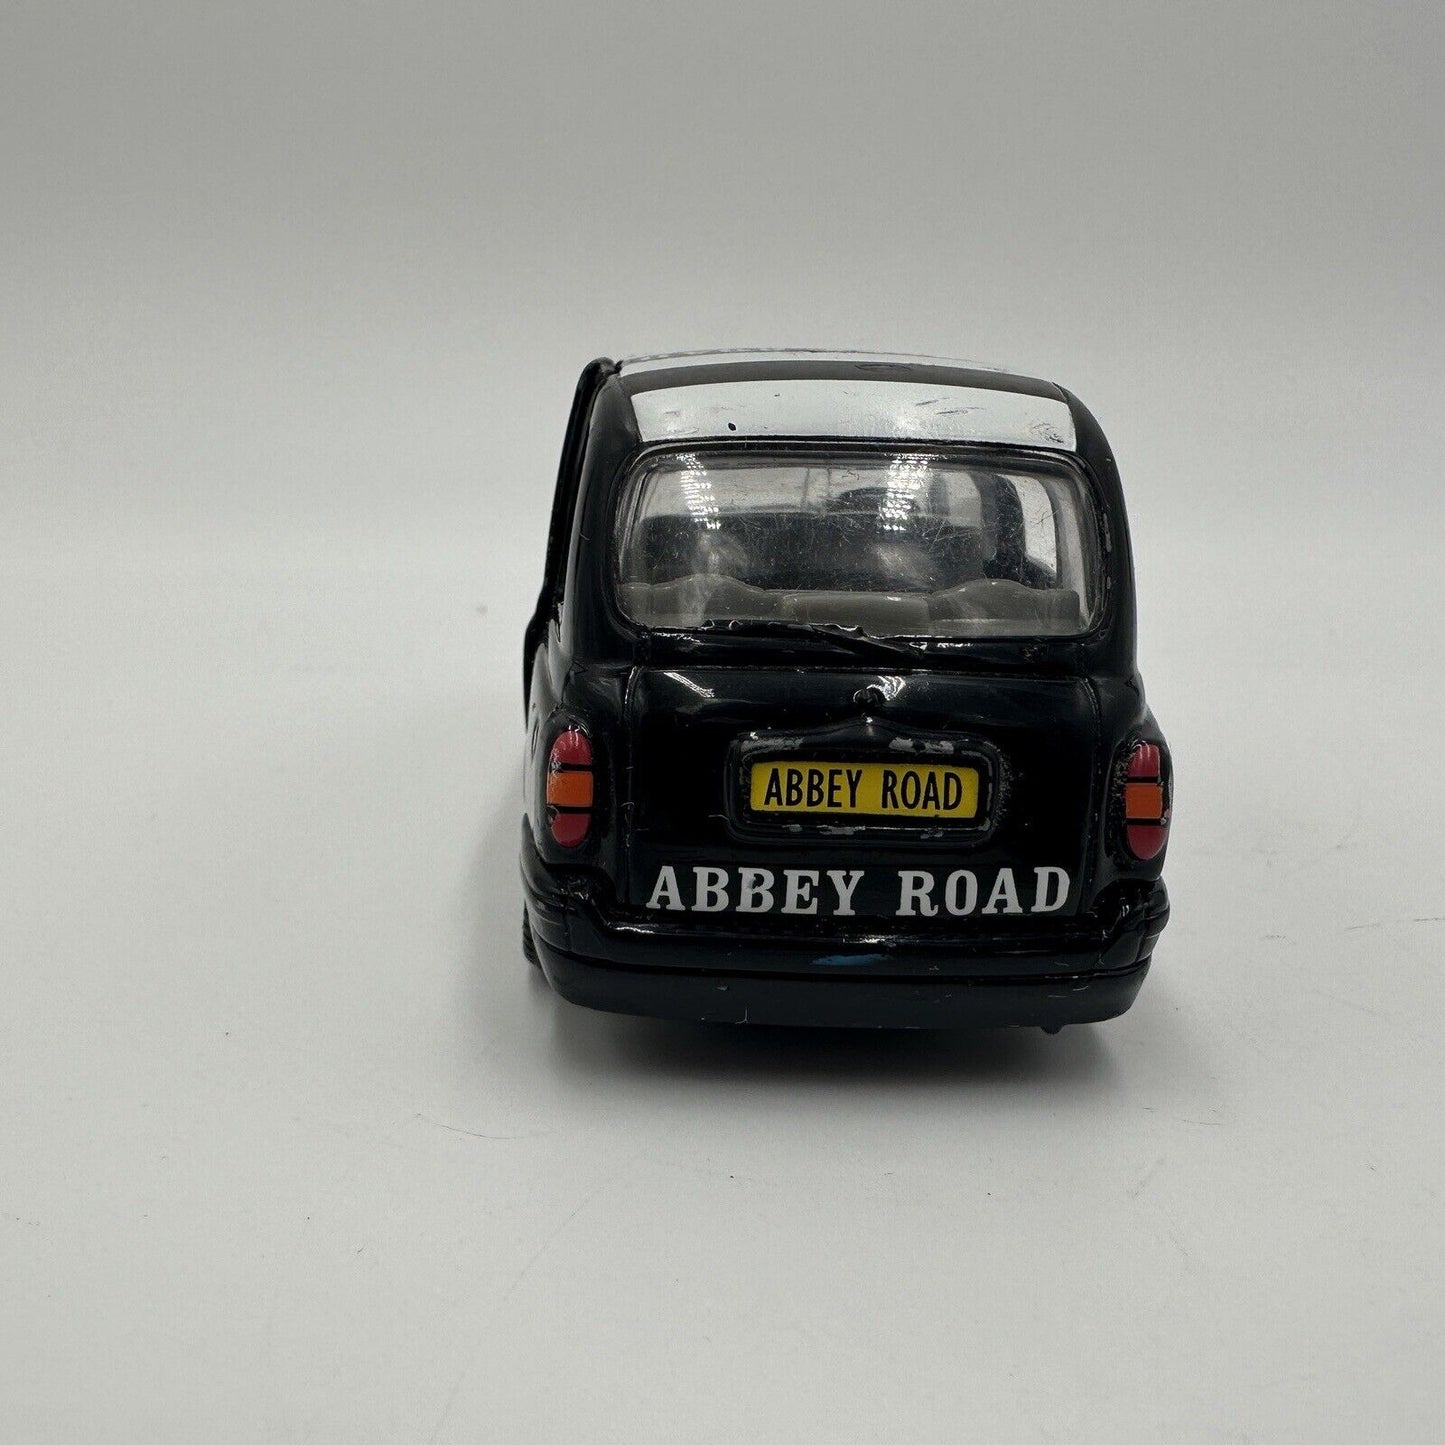 Vintage Corgi The Beatles Abbey Road Album Cover Die-Cast London Taxi Cab